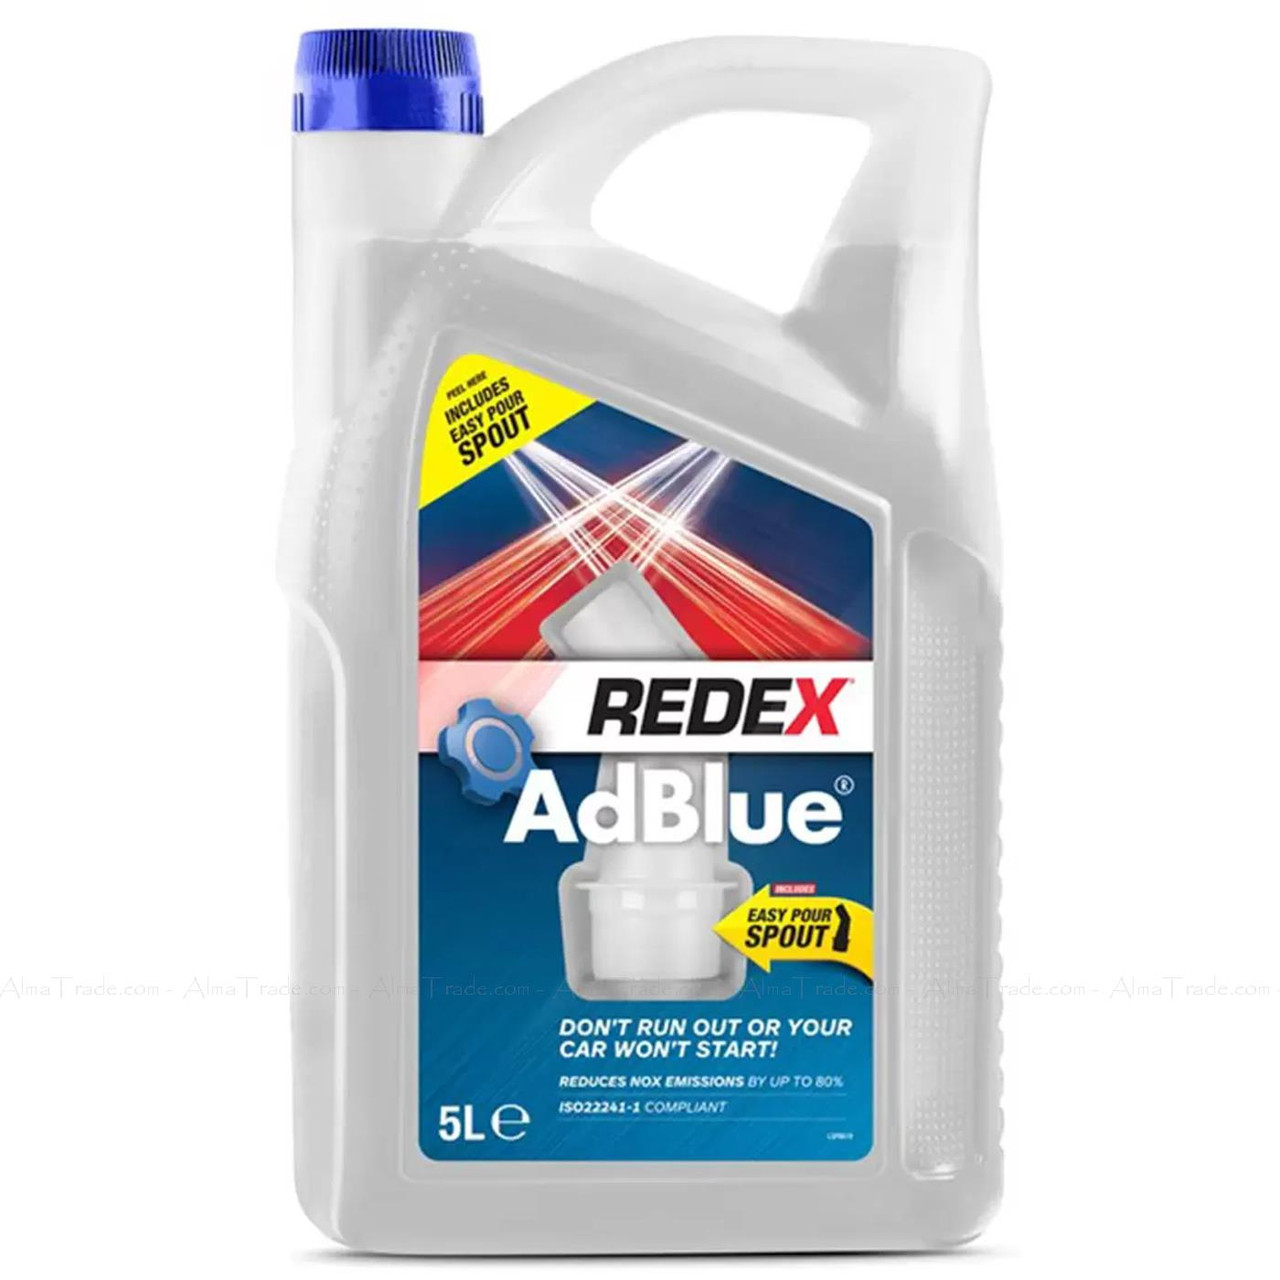 Redex Adblue with Spout RADD0033A Fuel Car Additive Treatment